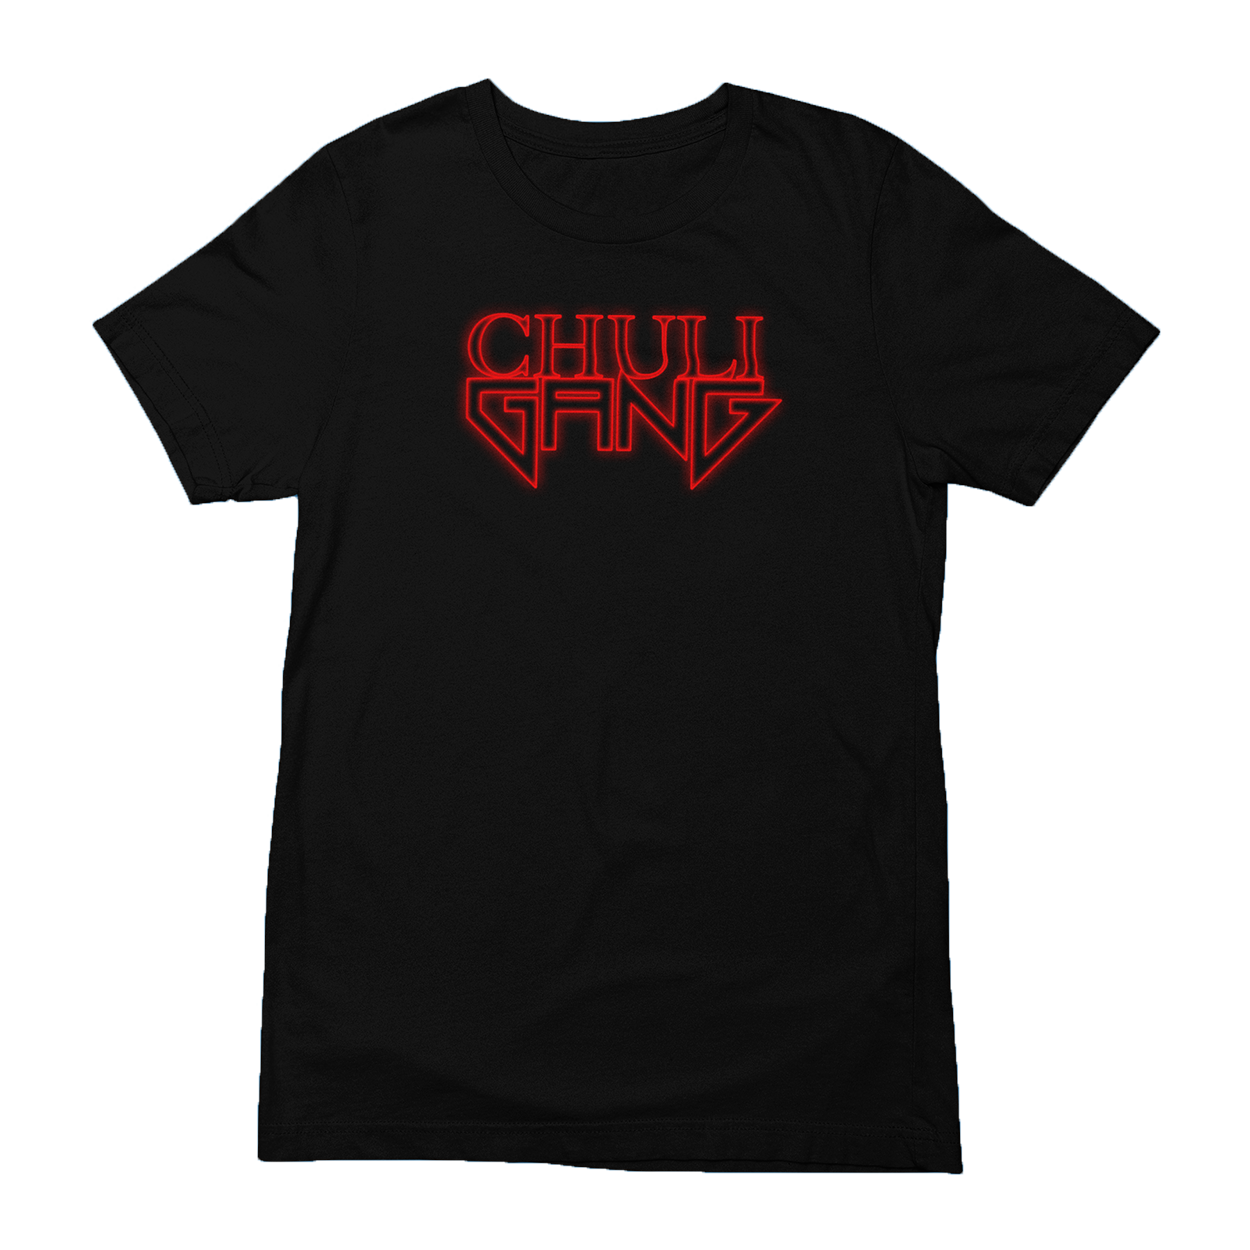 Chuligang Logo Tshirt (Black)